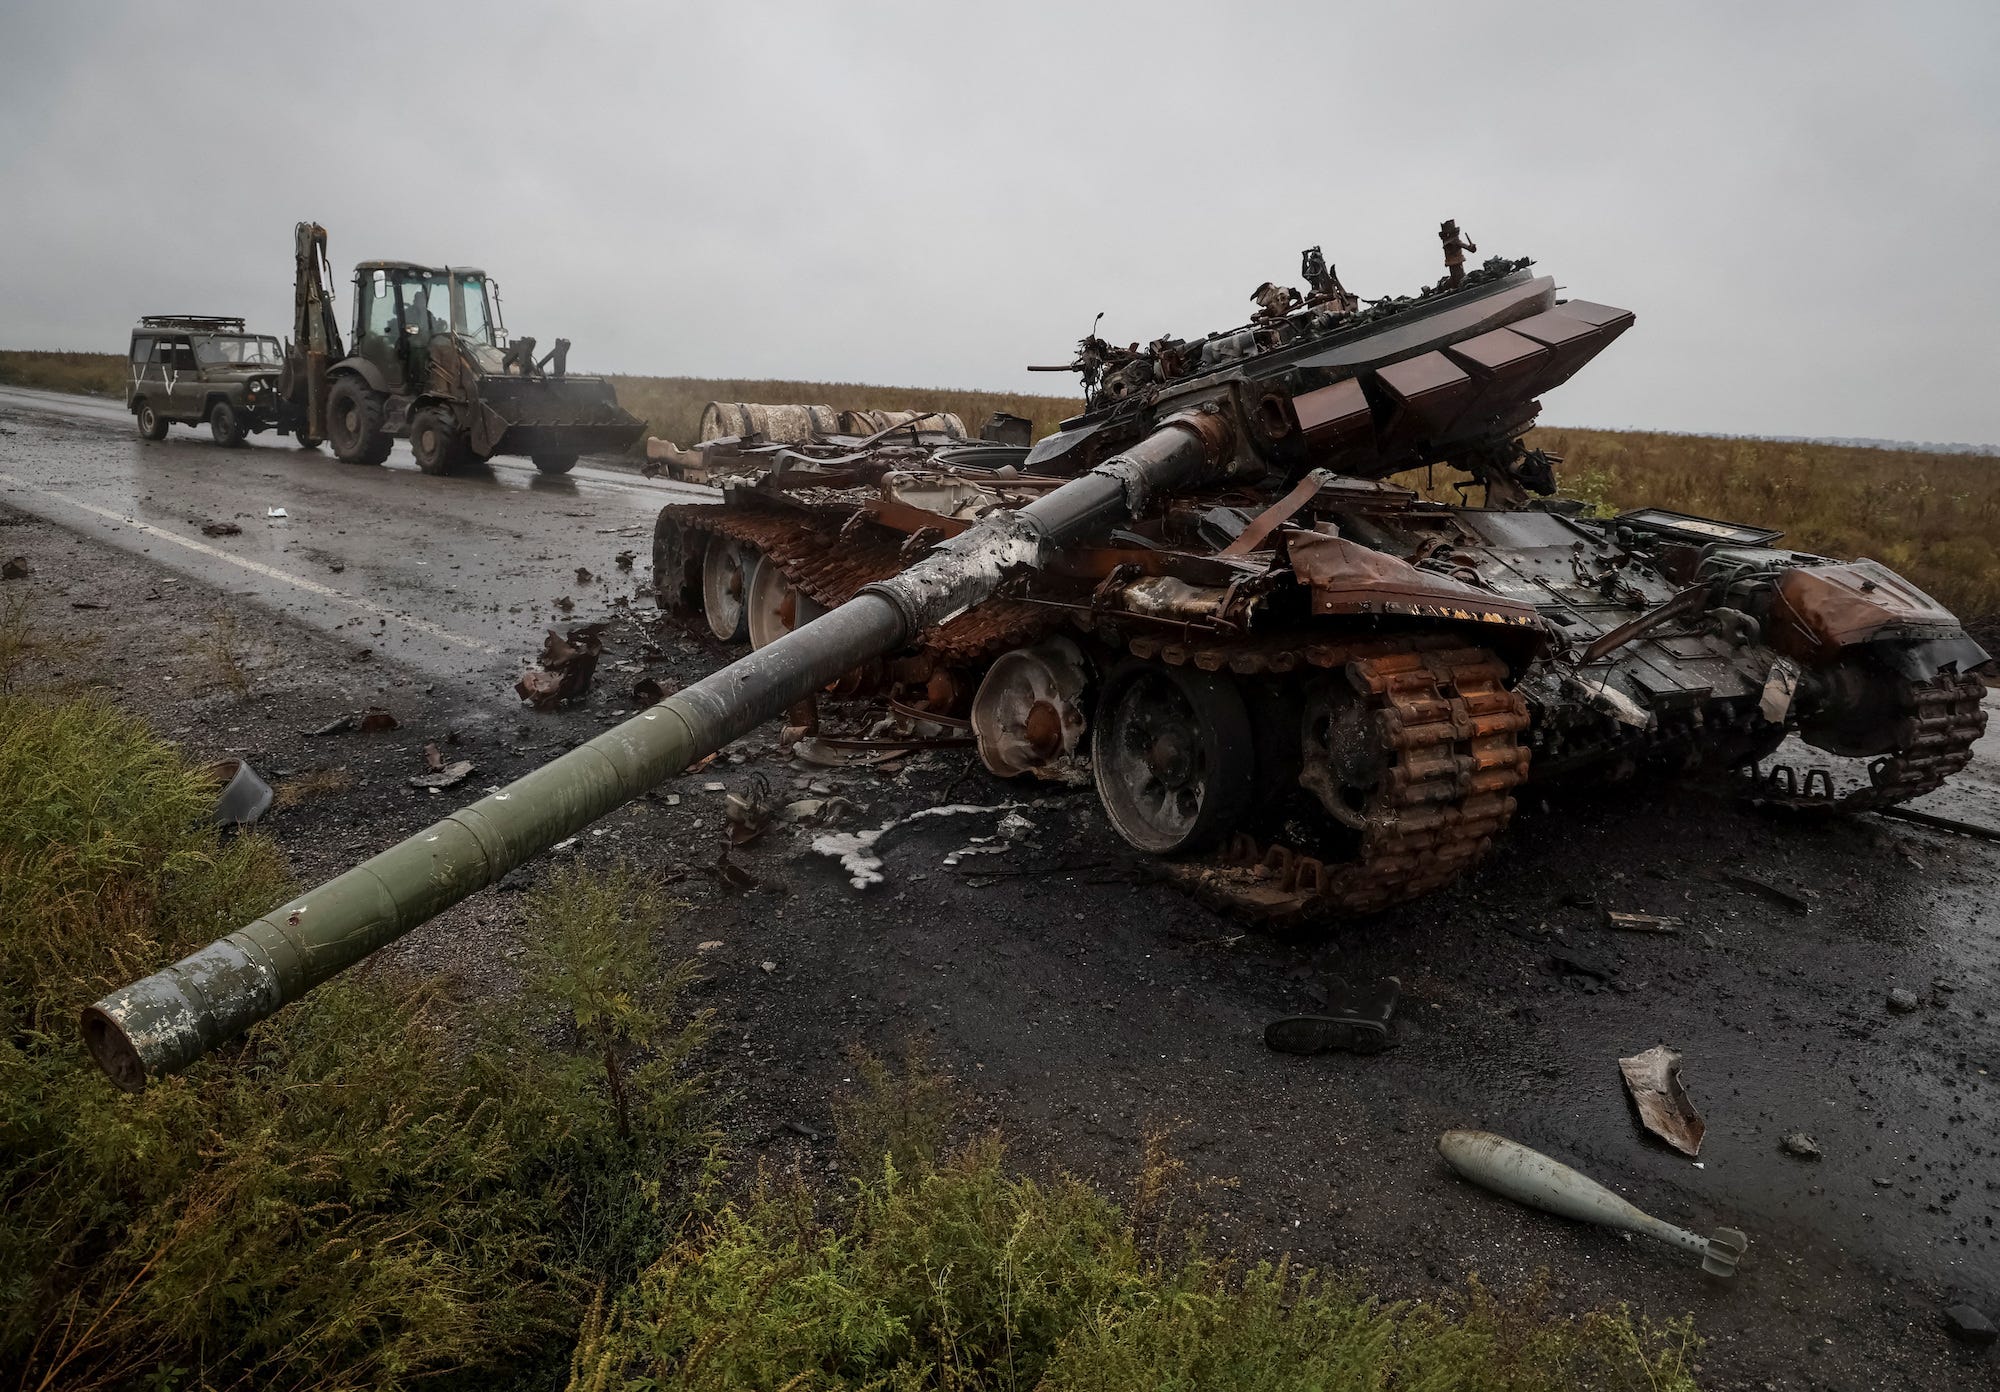 Eine zerstörte russische Bräune auf einer Straße im Vordergrund, mit einem ukrainischen Soldaten, der auf einem Traktor fährt und ein Militärfahrzeug hinter sich herzieht, alles unter einem grauen Himmel